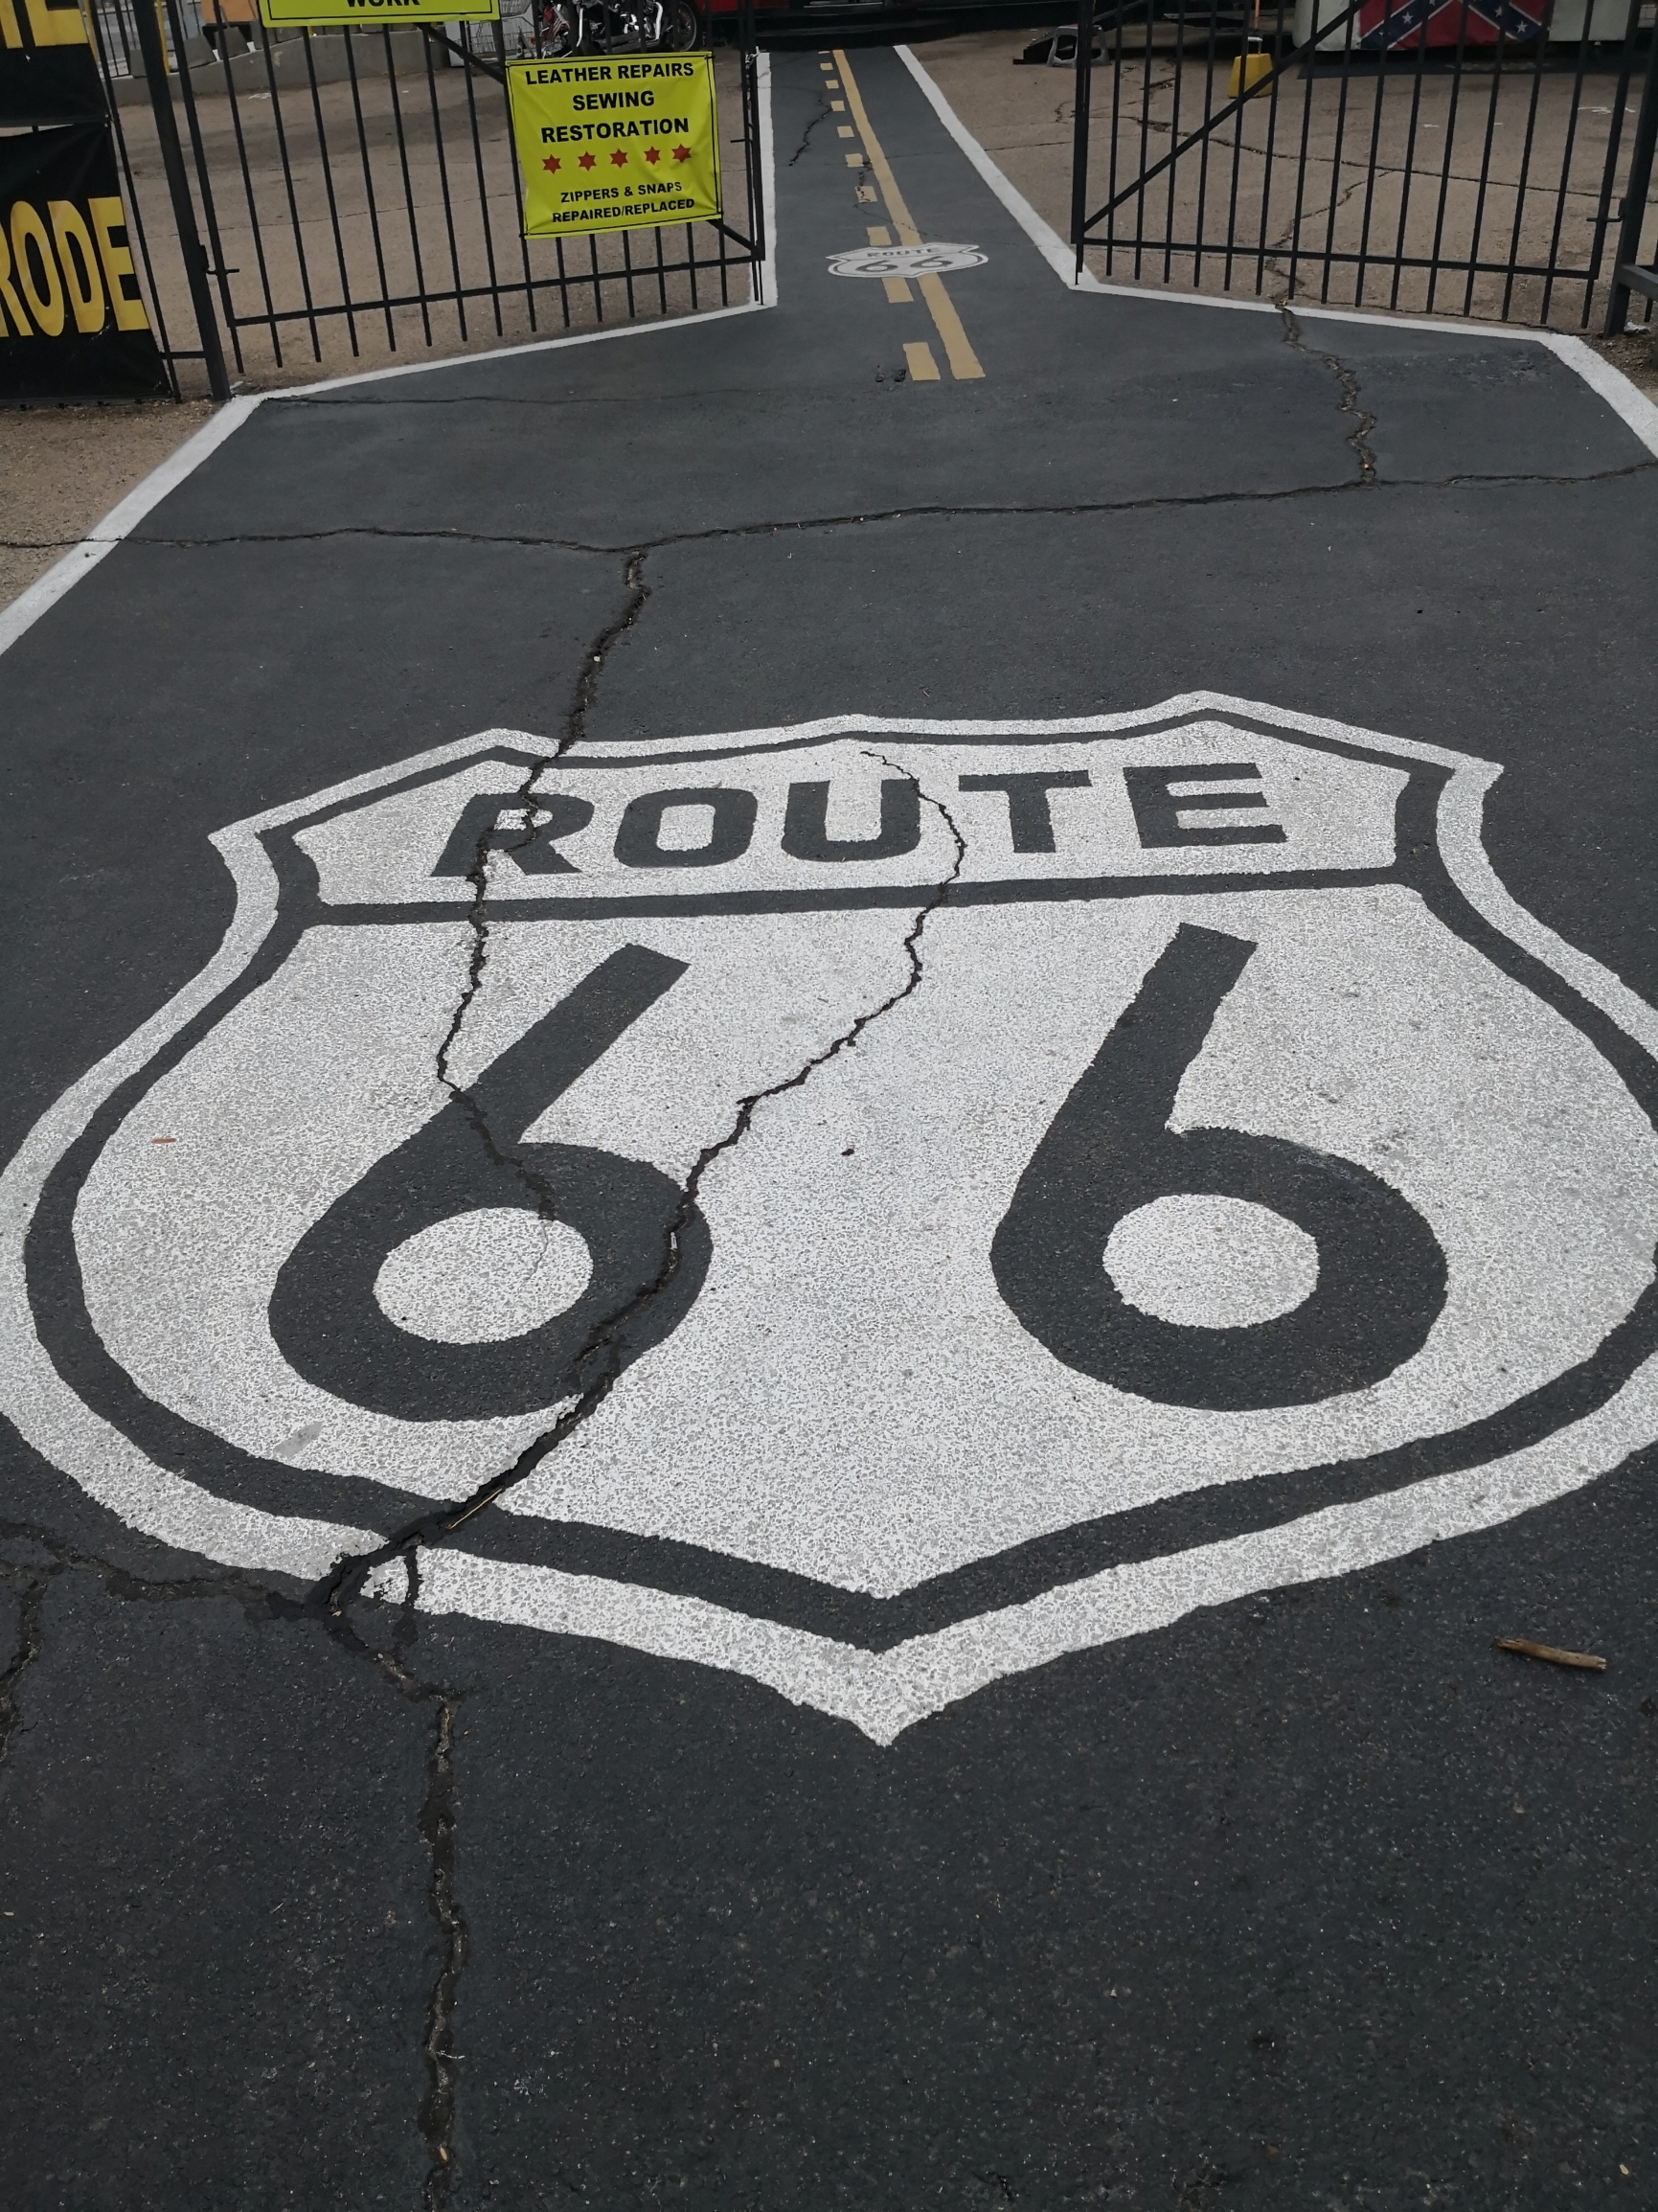 66号公路心脏-金曼小镇 66号公路横穿七州，号称美国的母亲之路。加州，亚利桑那州，新墨西哥州，德州